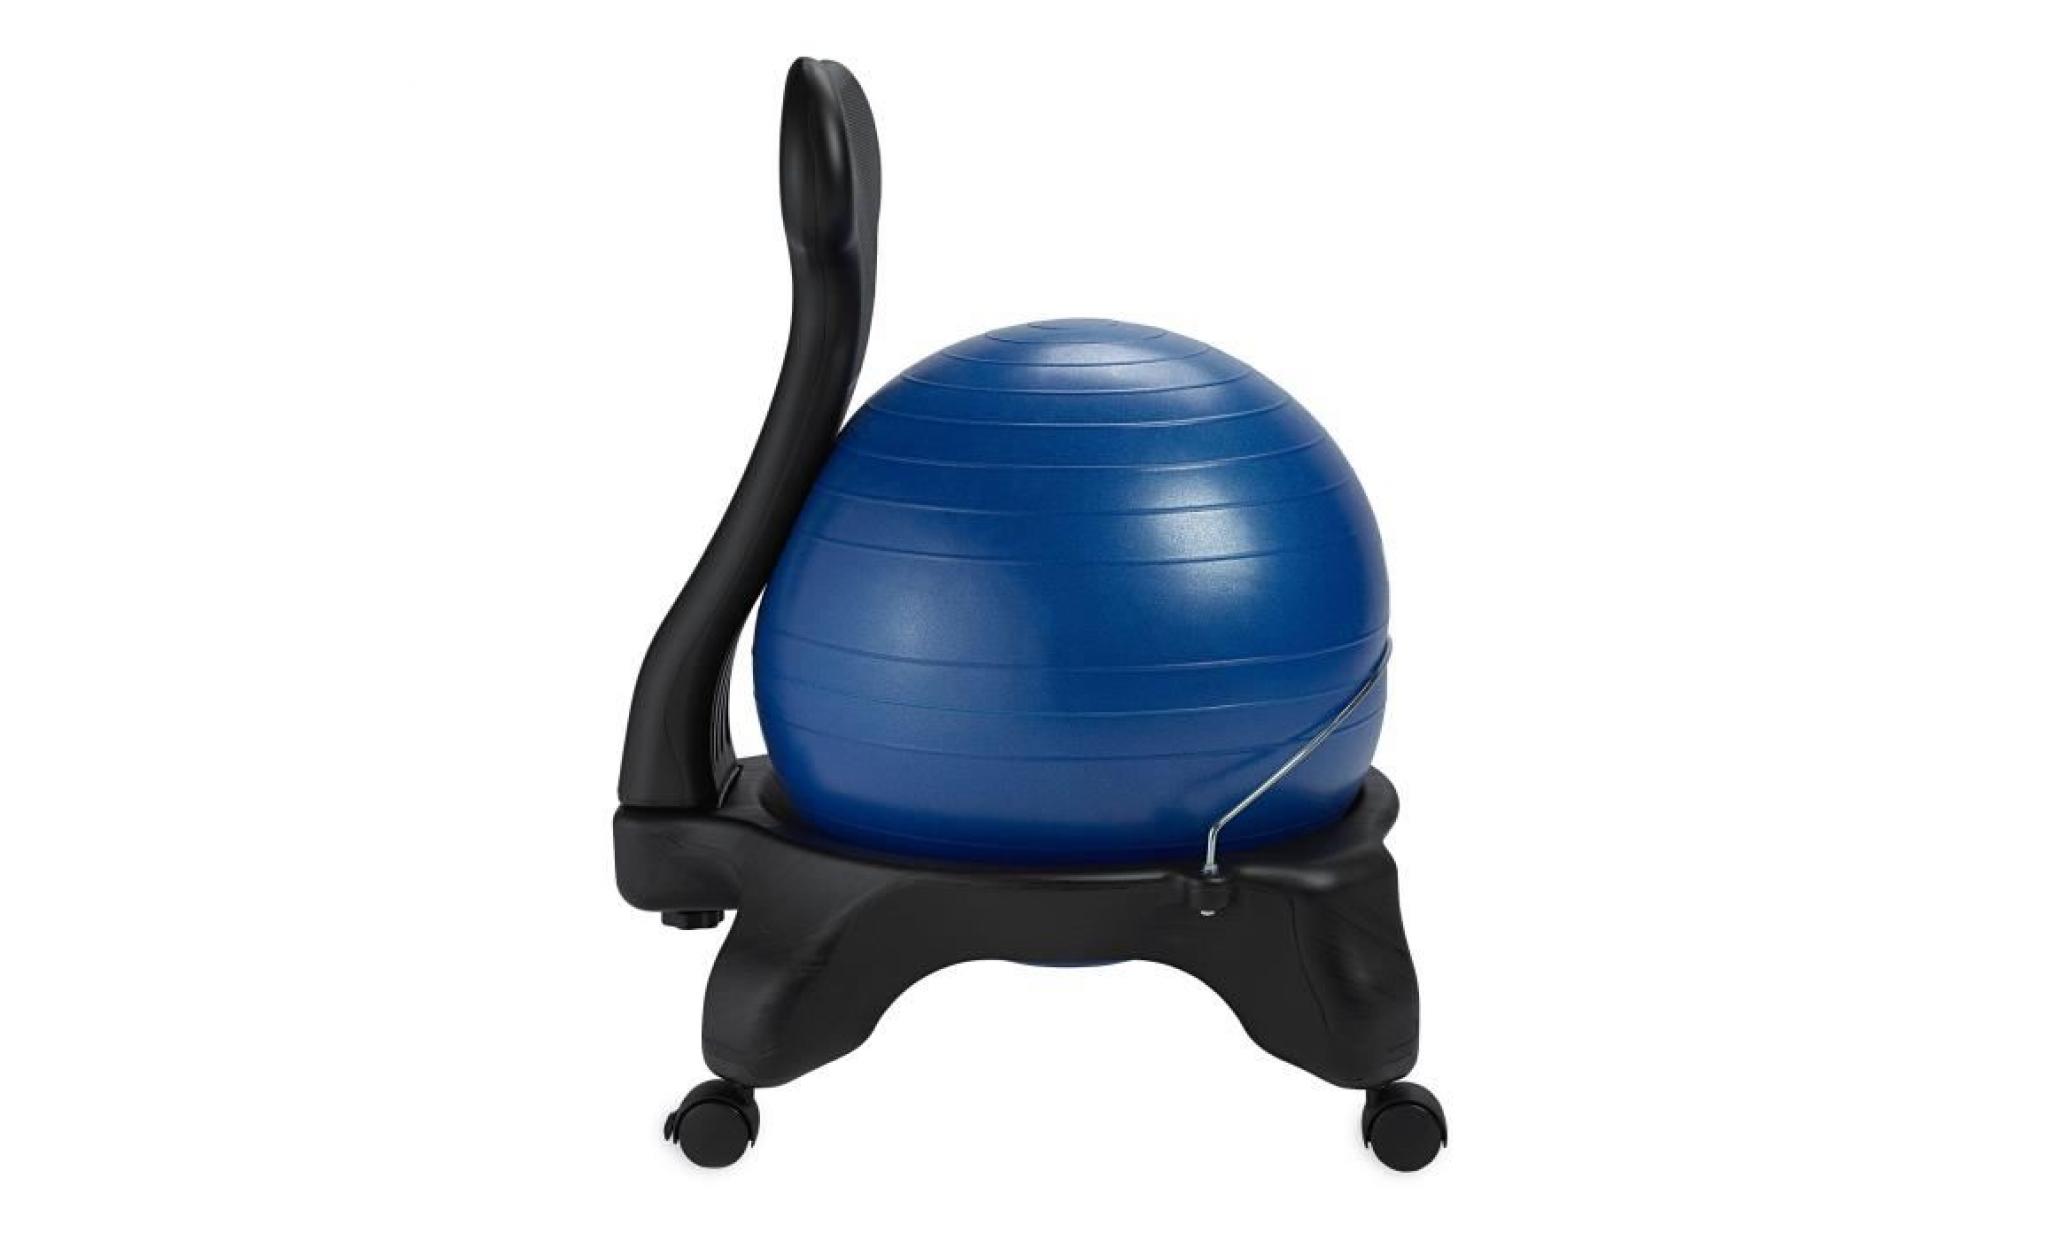 classique balance ball chair   yoga exercice stability ball haut de gamme chaise ergonomique pour la maison et offi wt4dl